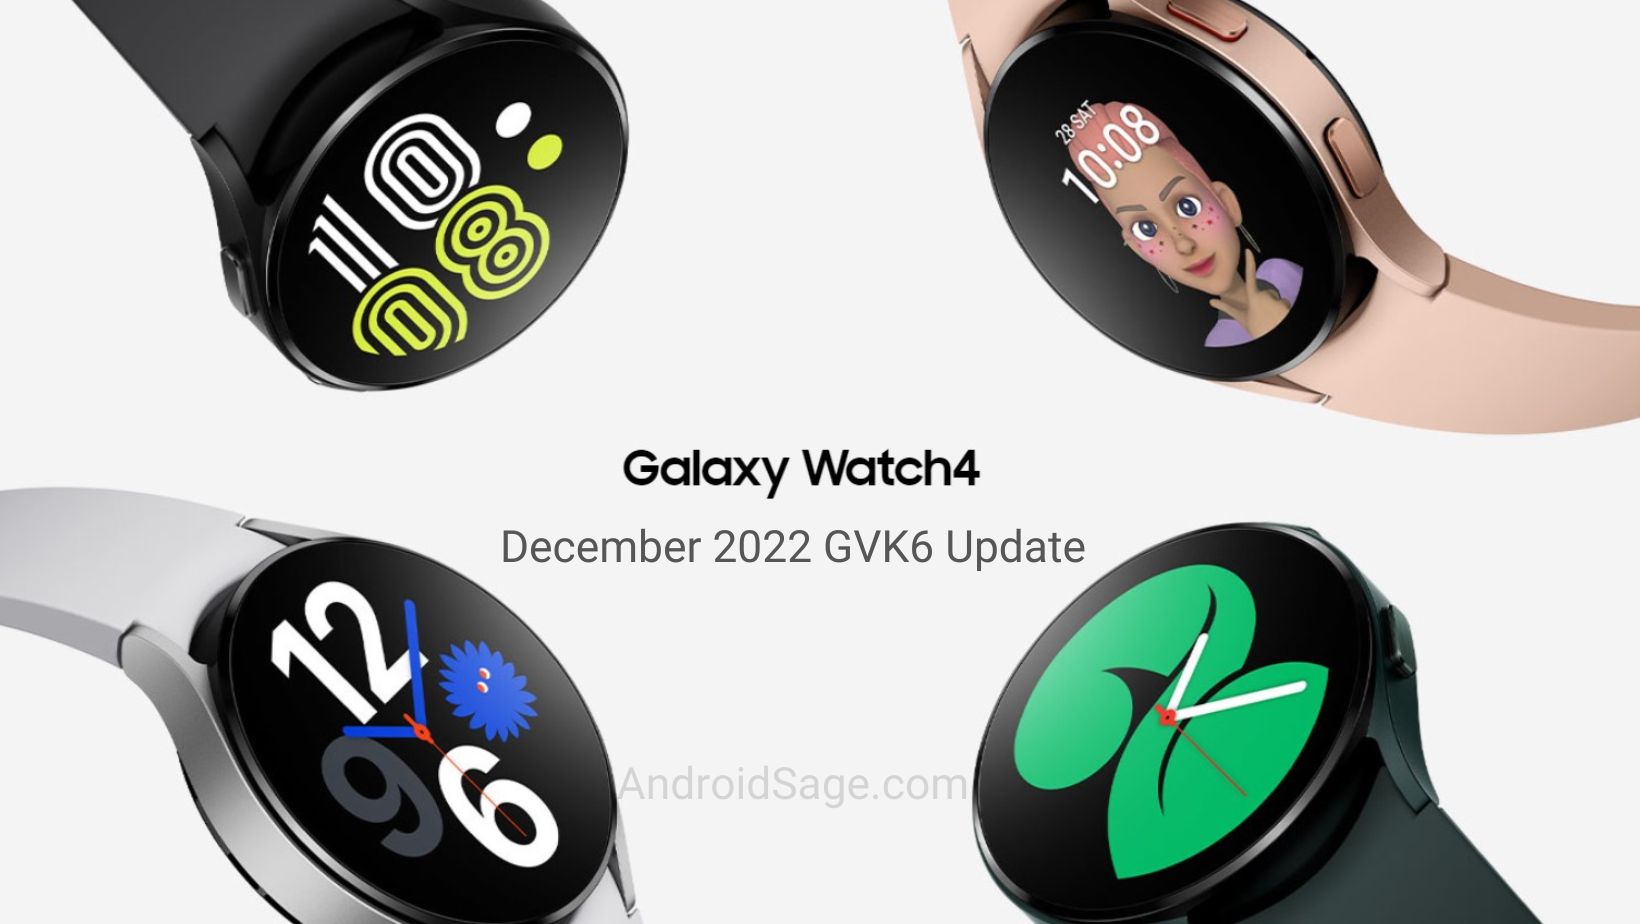 Samsung Galaxy Watch 4 December 2022 Update GVK6